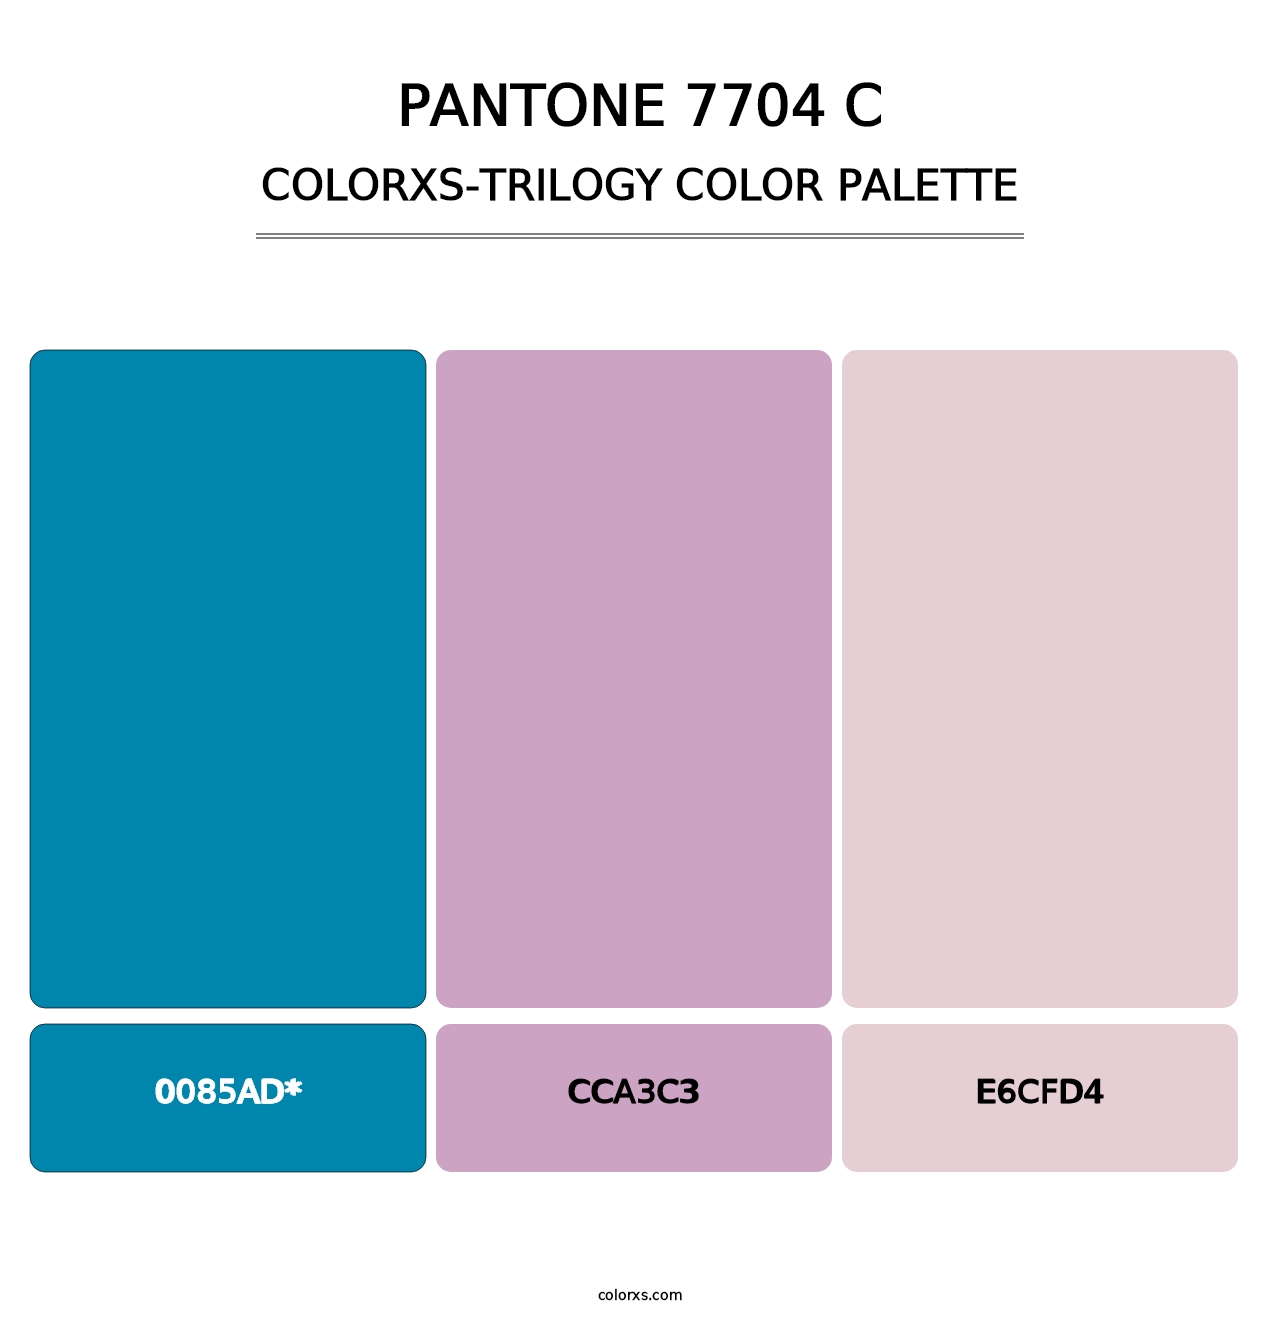 PANTONE 7704 C - Colorxs Trilogy Palette